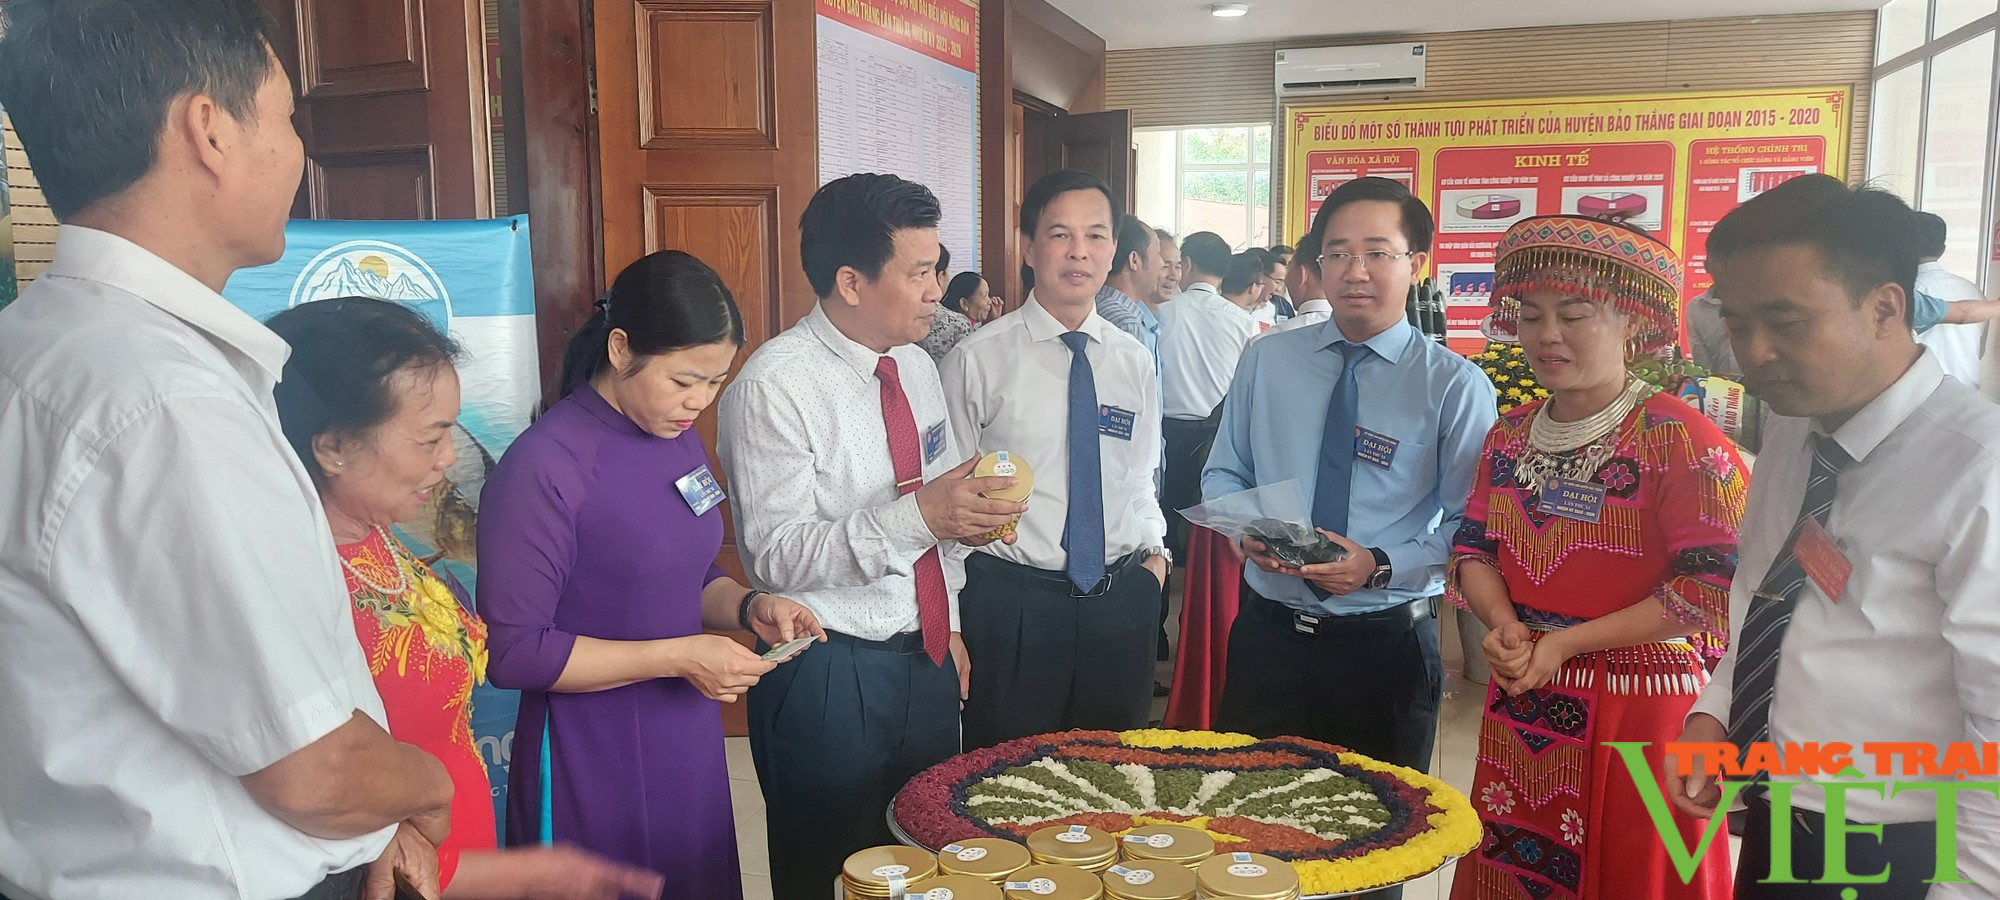 Ông Phạm Hồng Phong tái đắc cử Chủ tịch Hội Nông dân huyện Bảo Thắng, tỉnh Lào Cai - Ảnh 2.